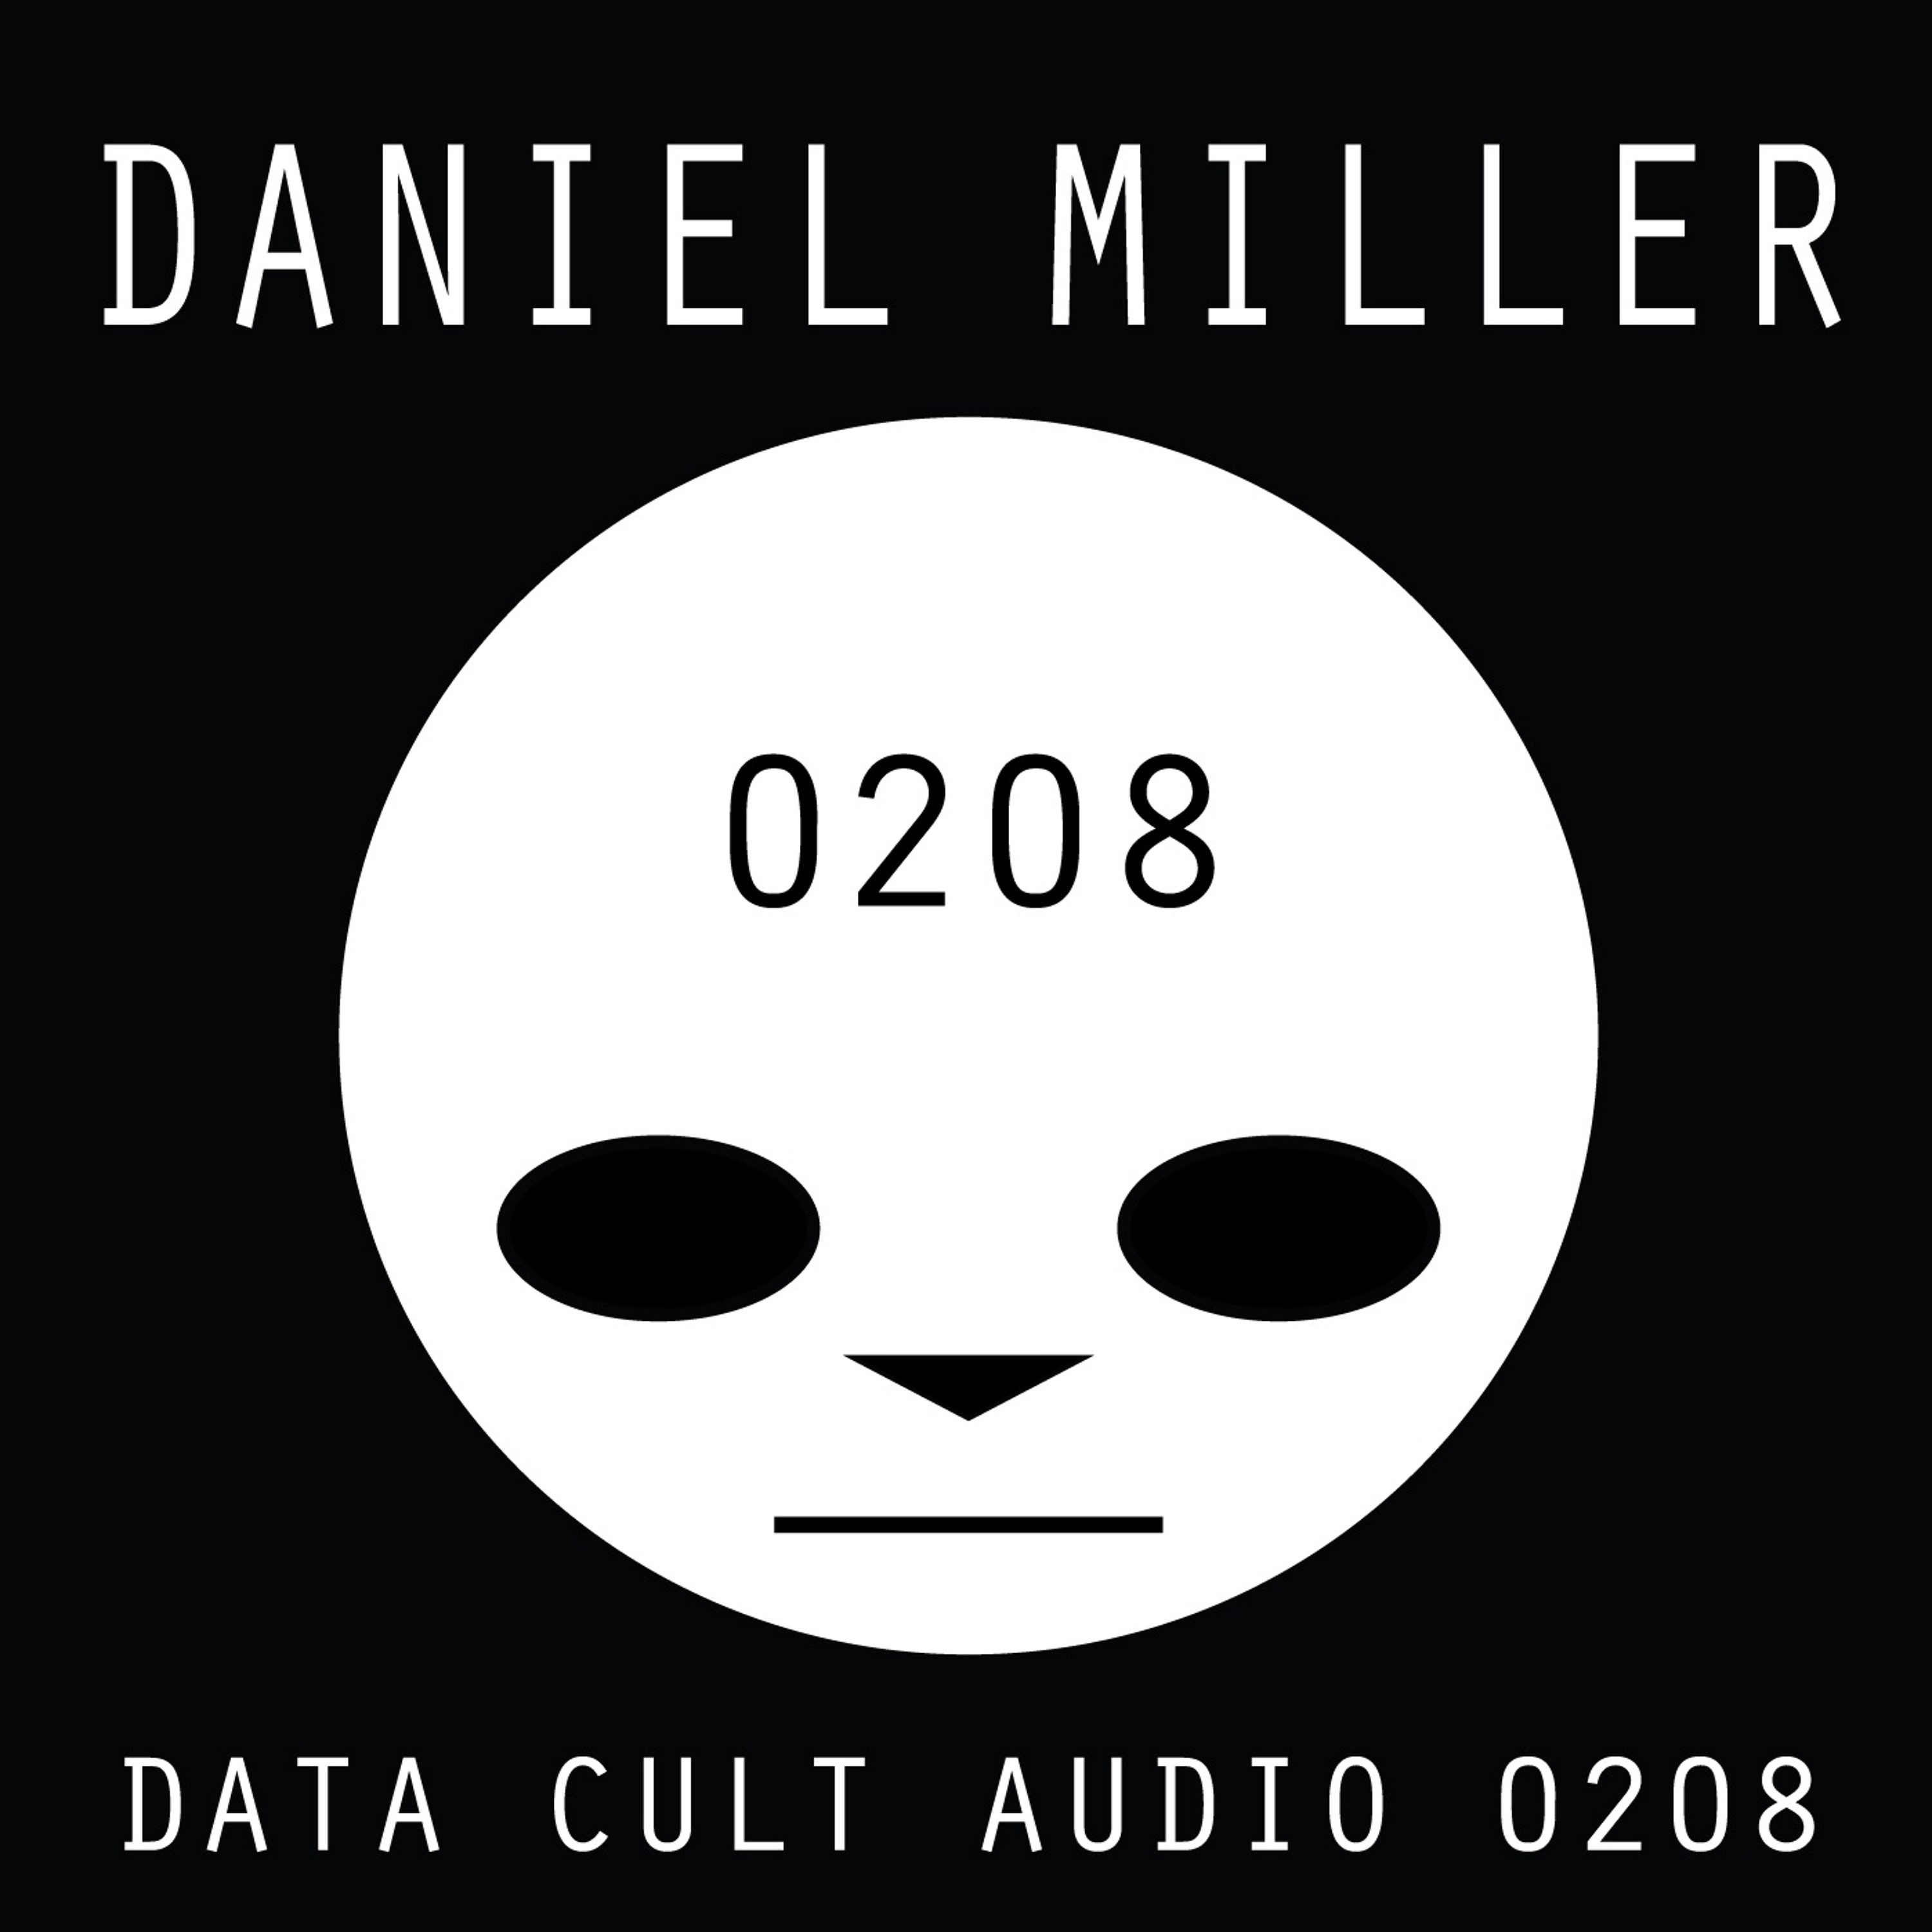 Data Cult Audio 0208 - Daniel Miller